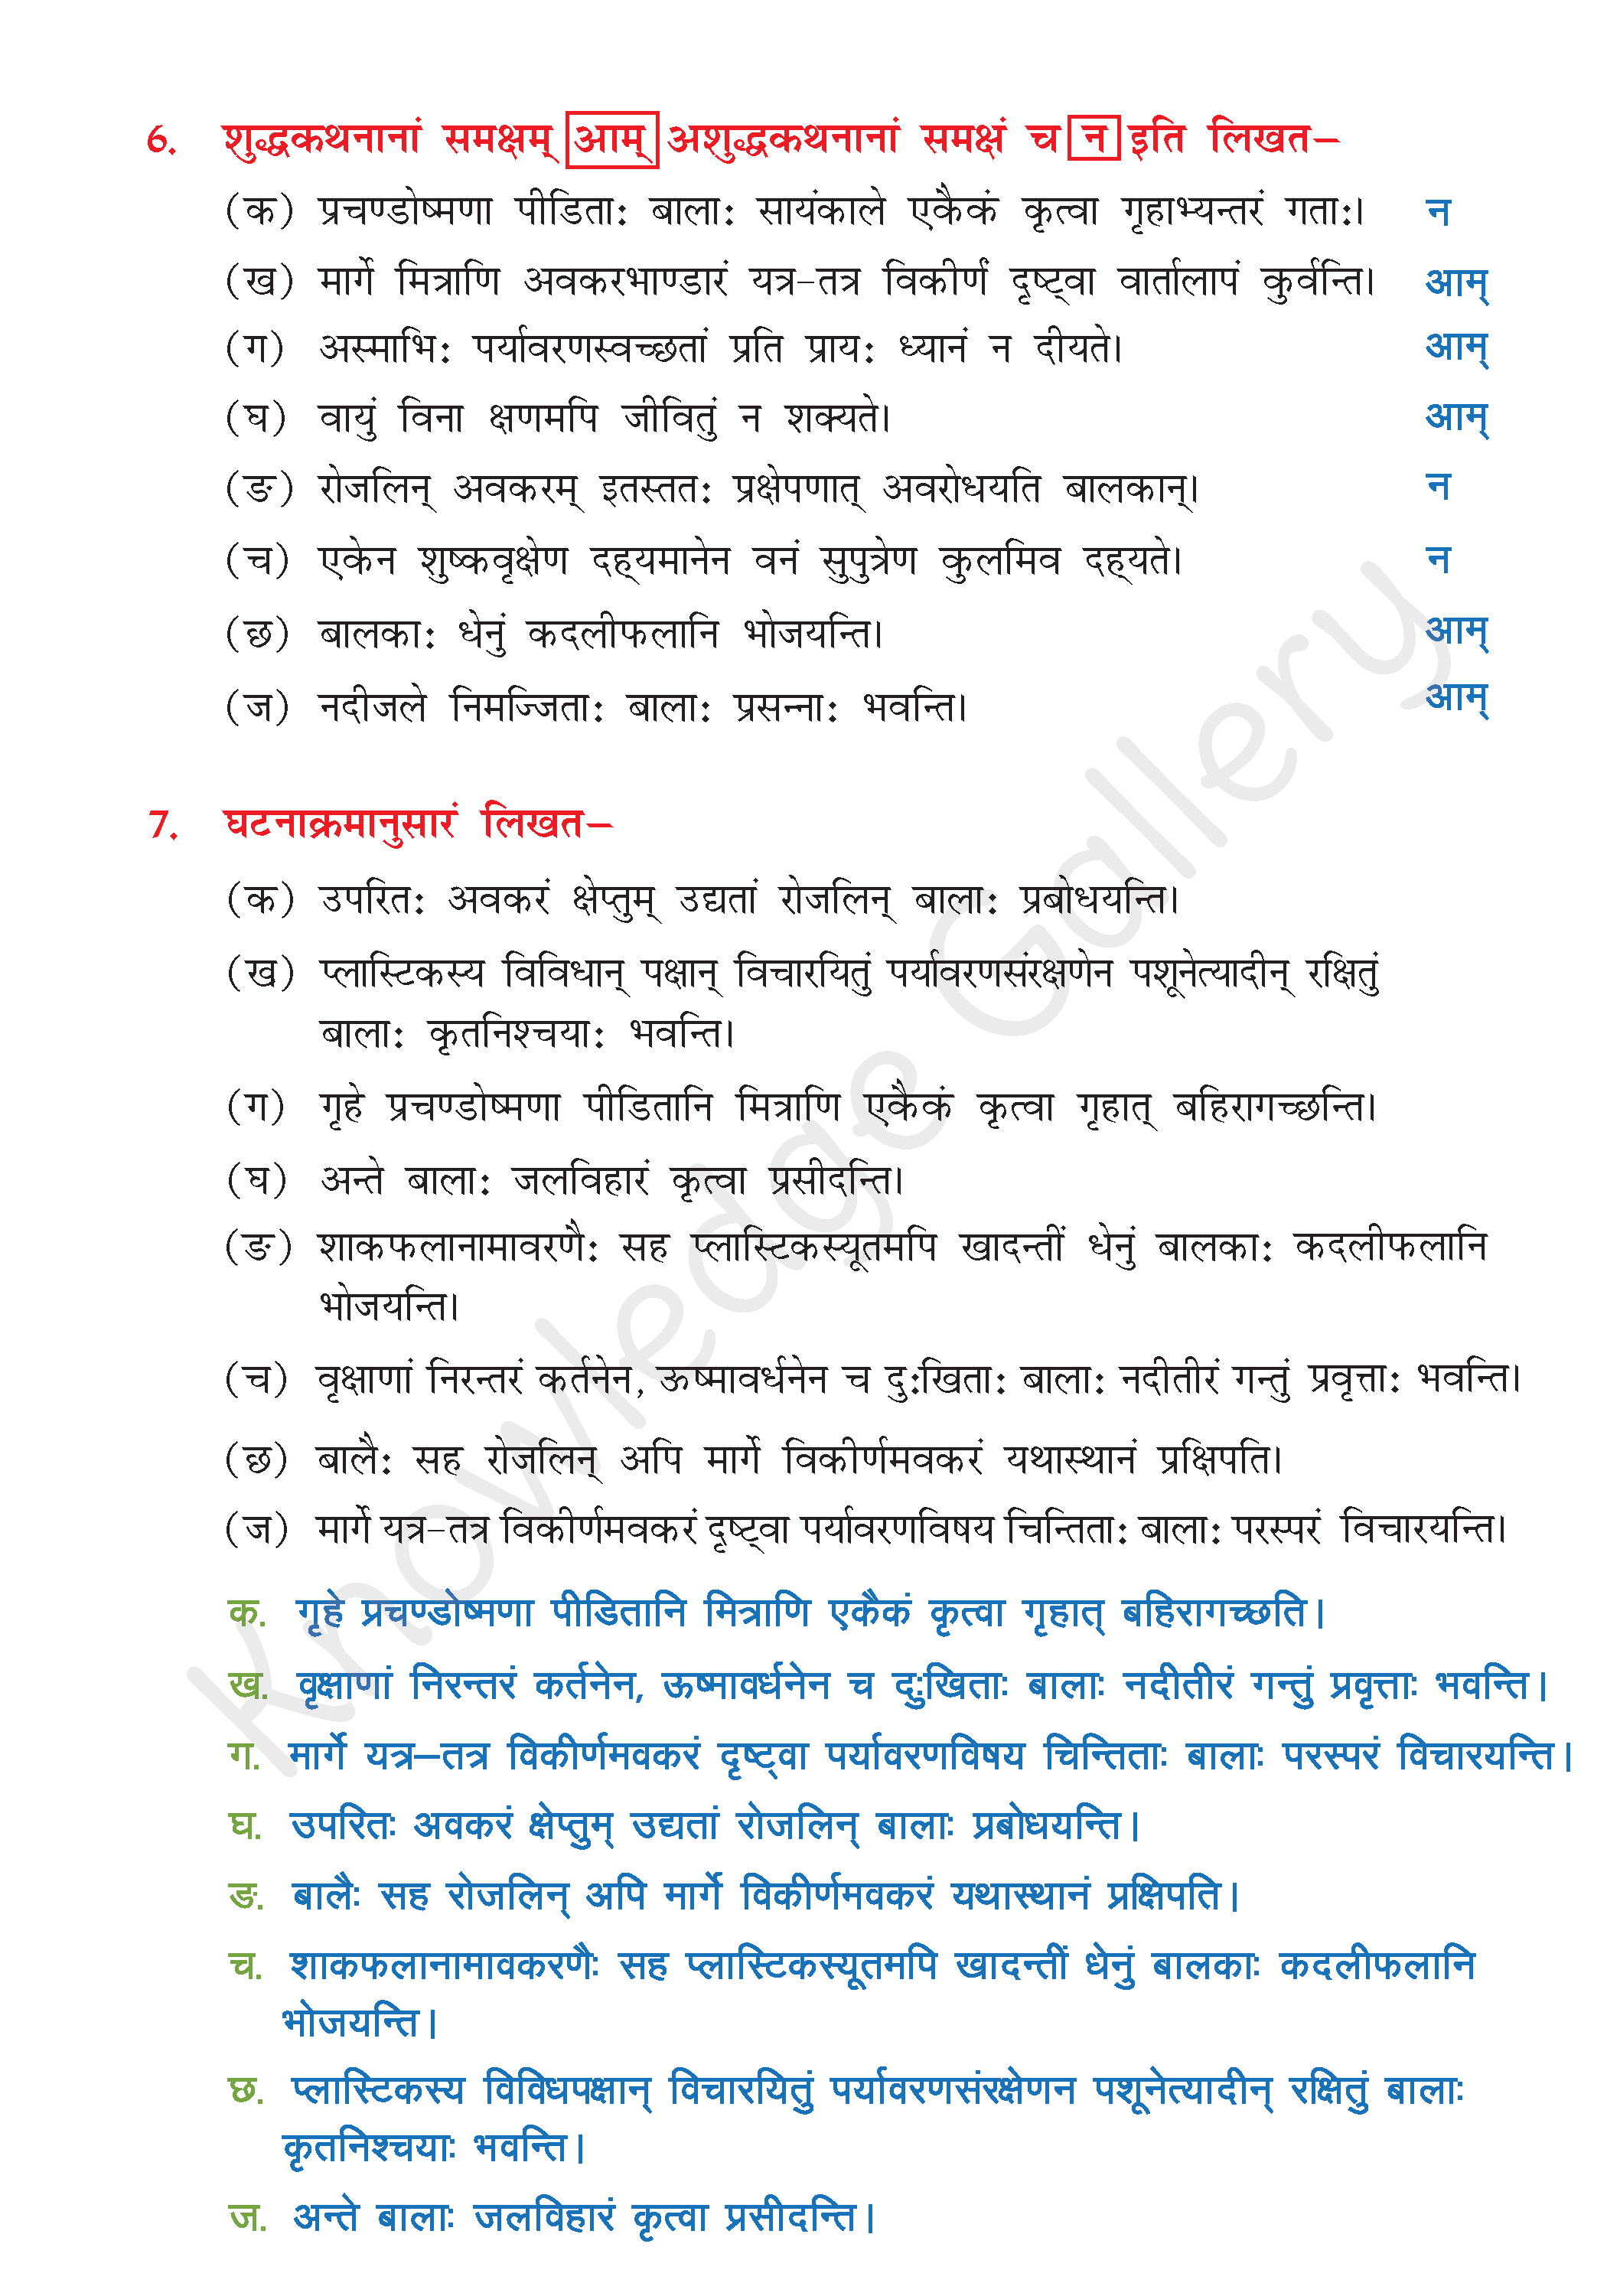 NCERT Solution For Class 8 Sanskrit Chapter 12 part 9